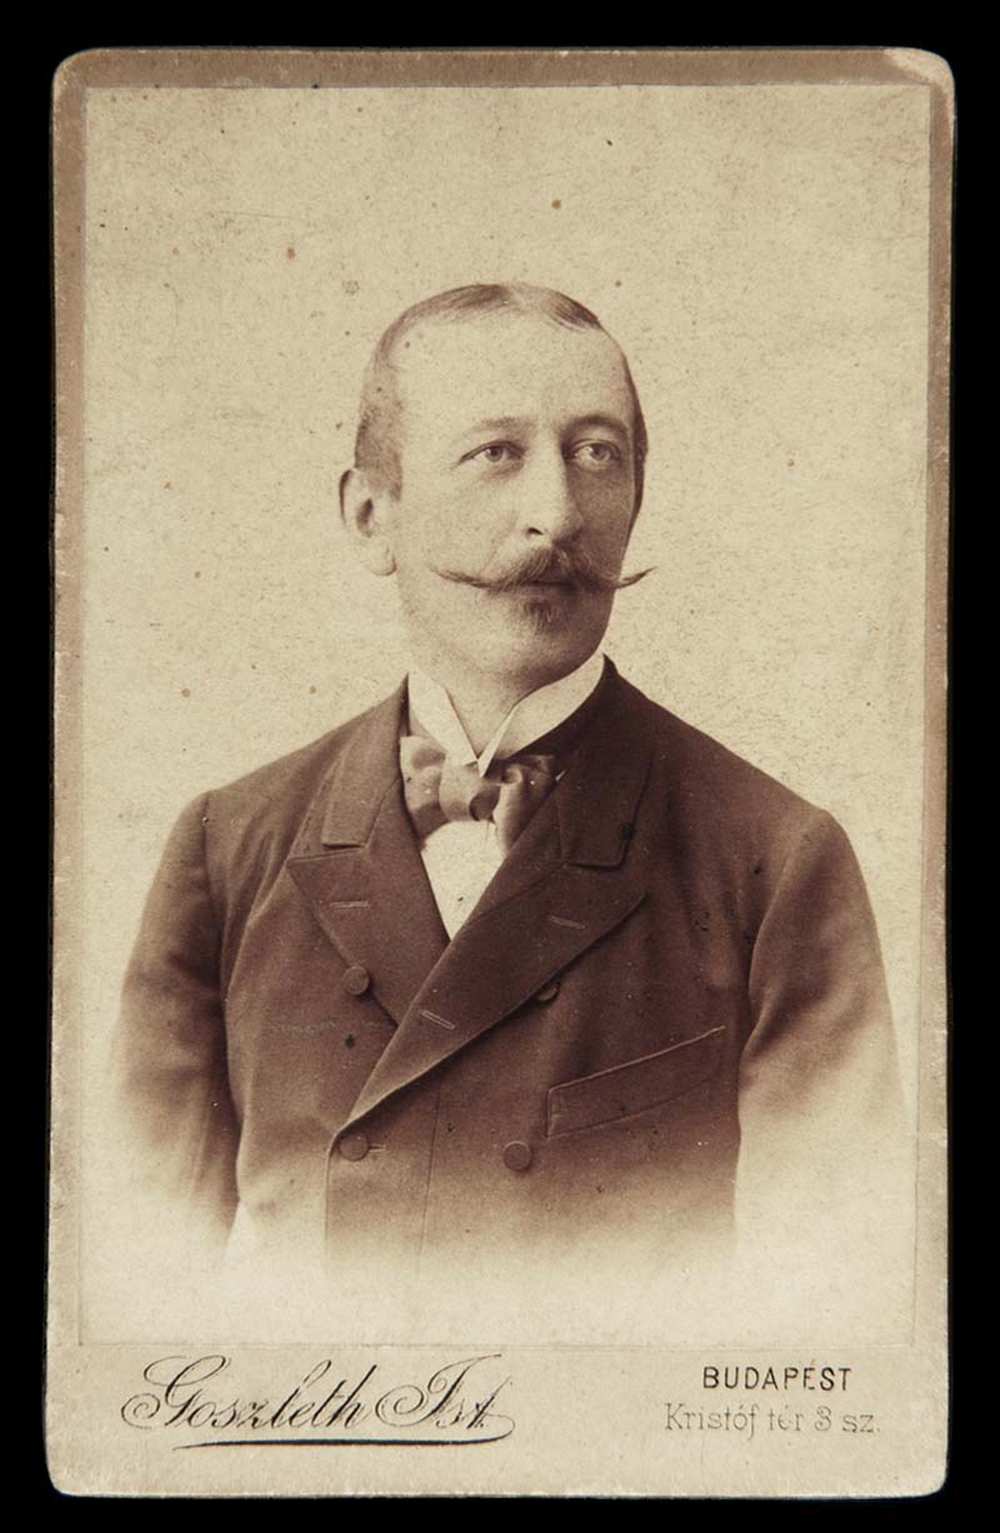 Bajuszos férfi műtermi portréja, 1880-1906. Jelzet: FTA 00225 – Történeti Fénykép- és Videótár